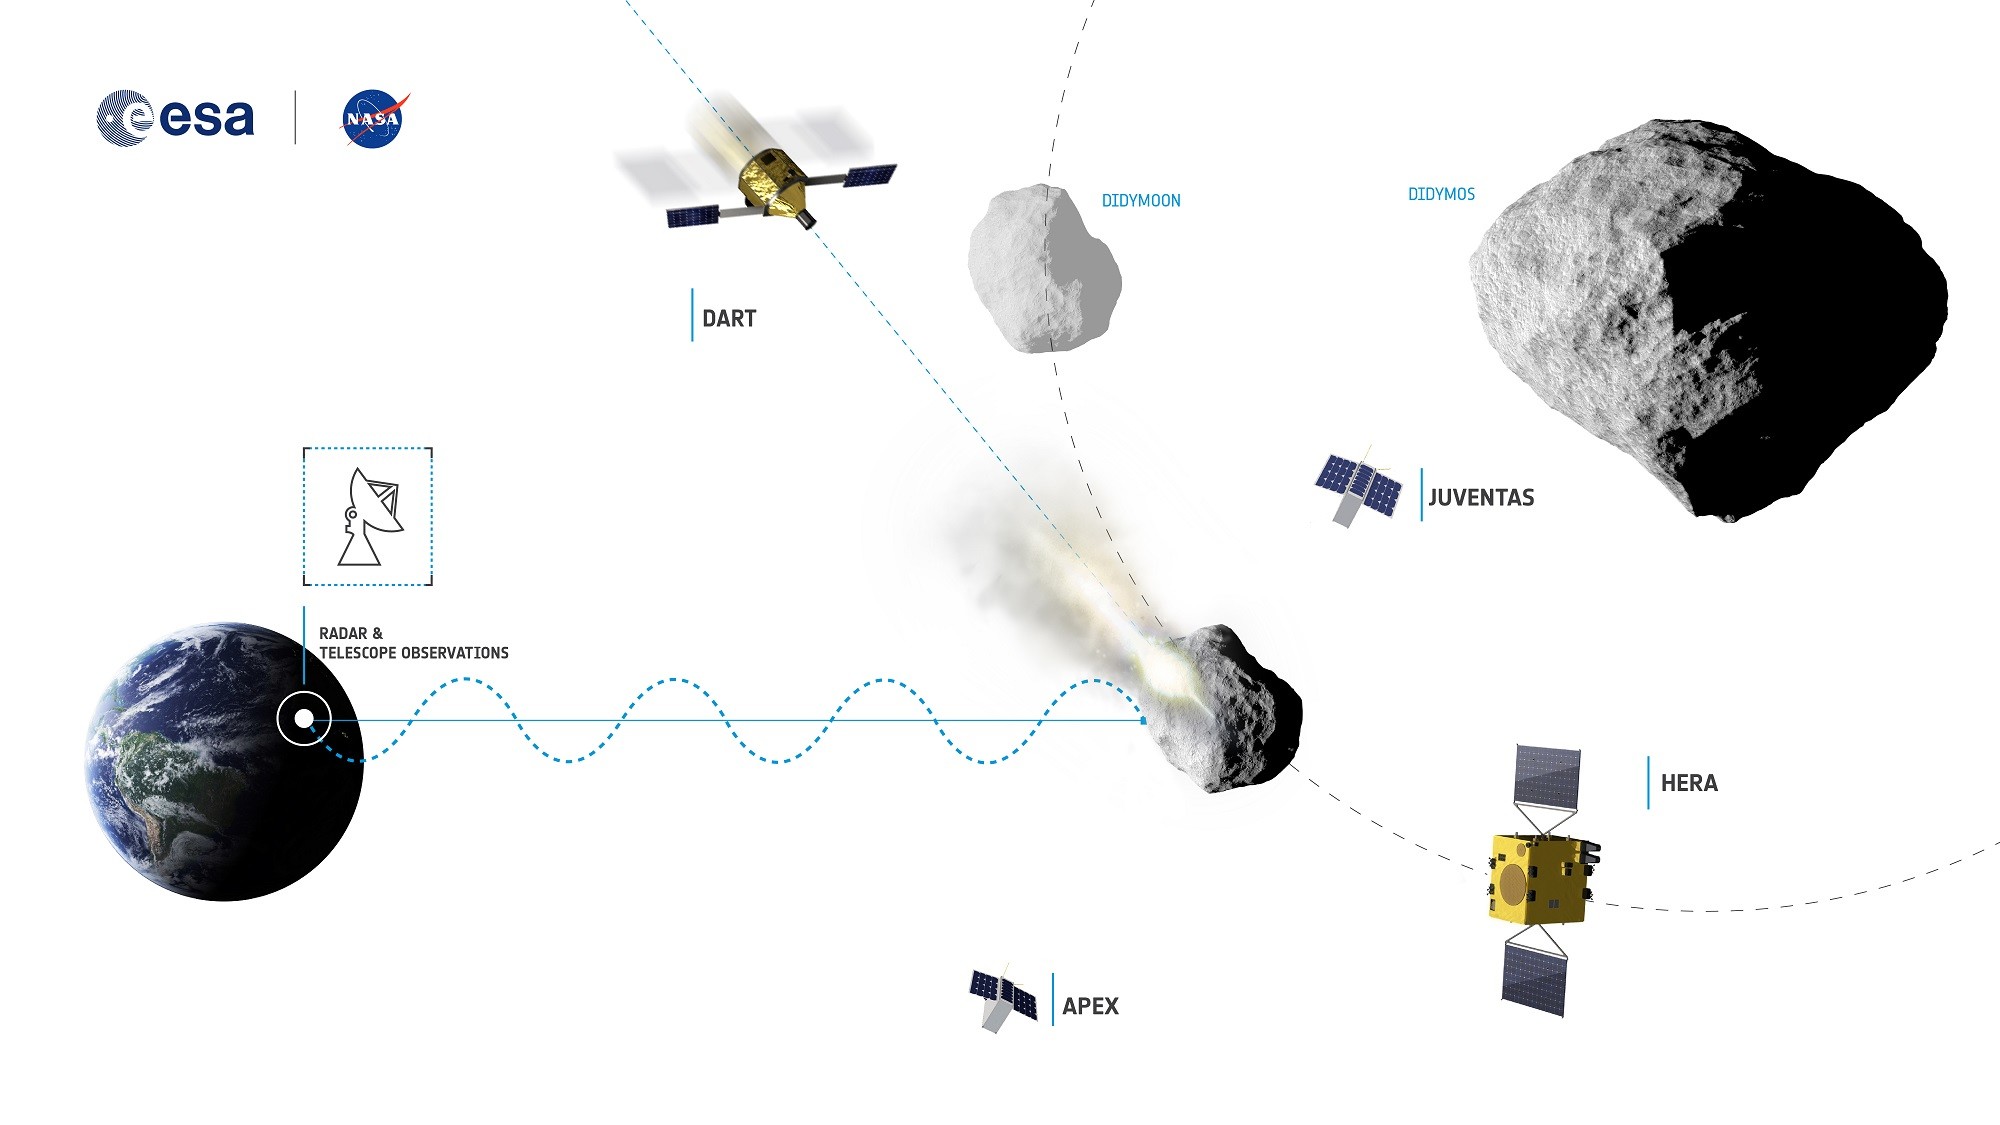 Proyecto AIDA para desviar asteroides